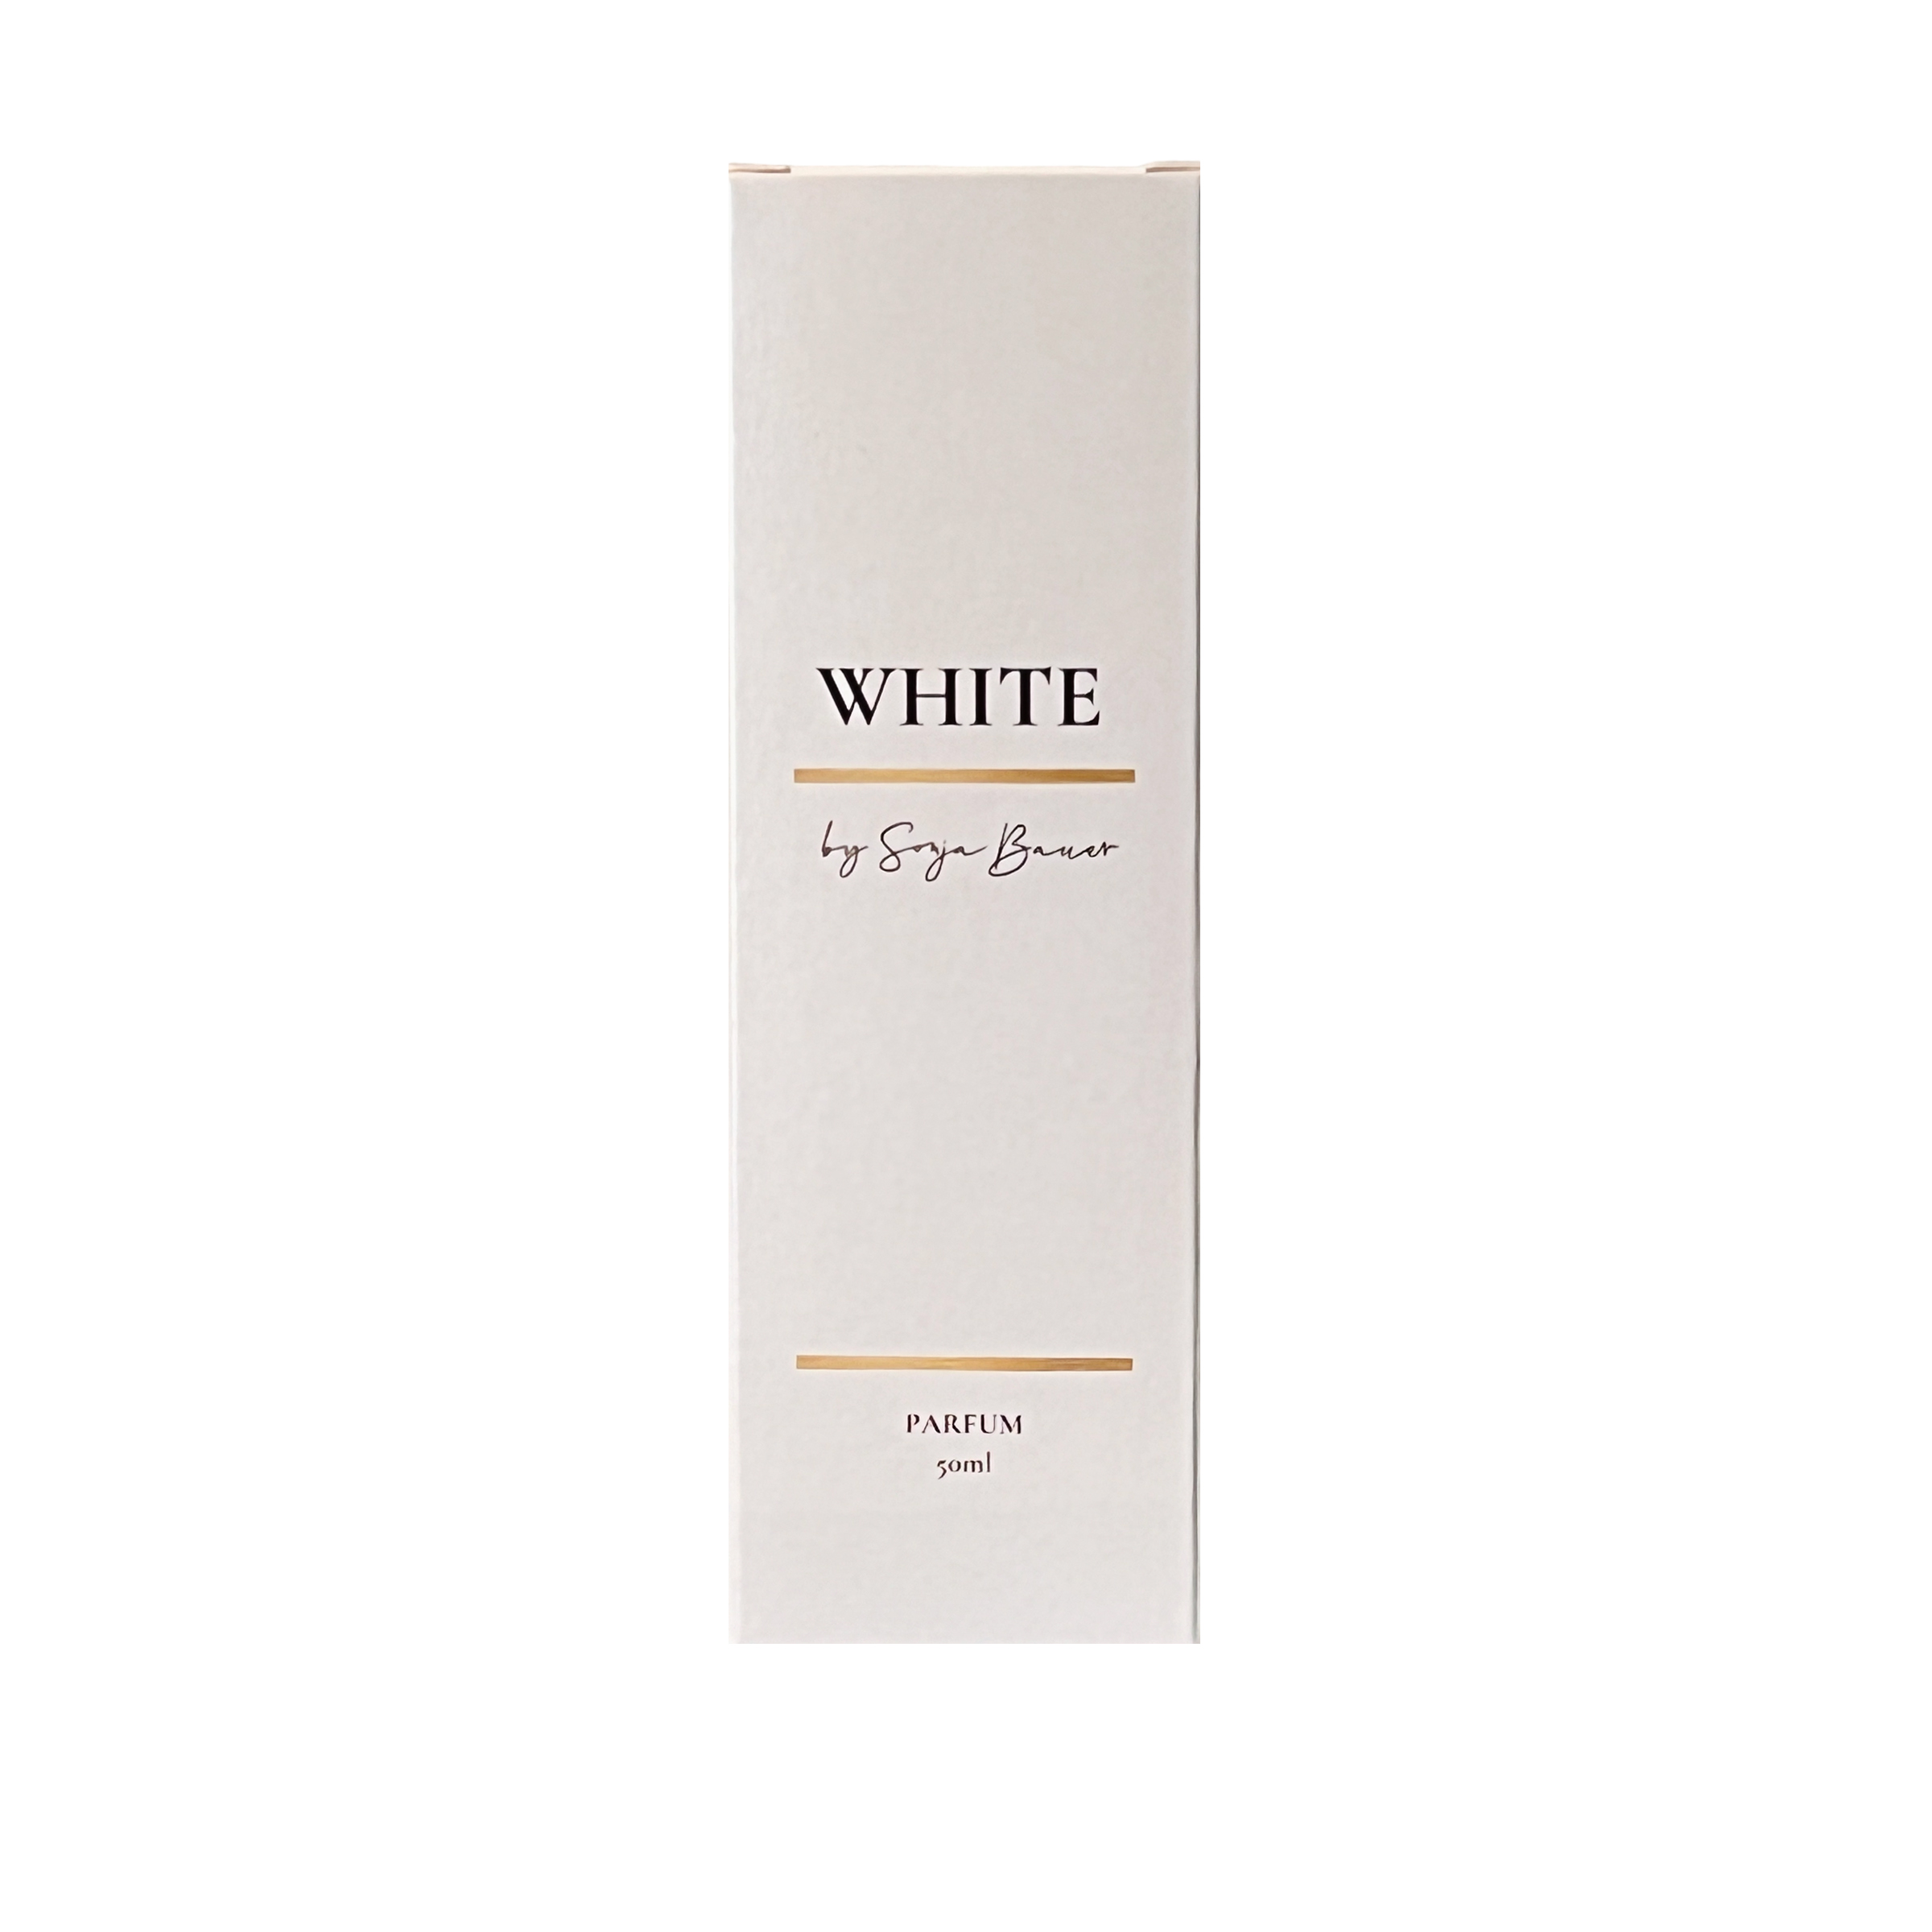 Parfüm WHITE by Sonja Bauer